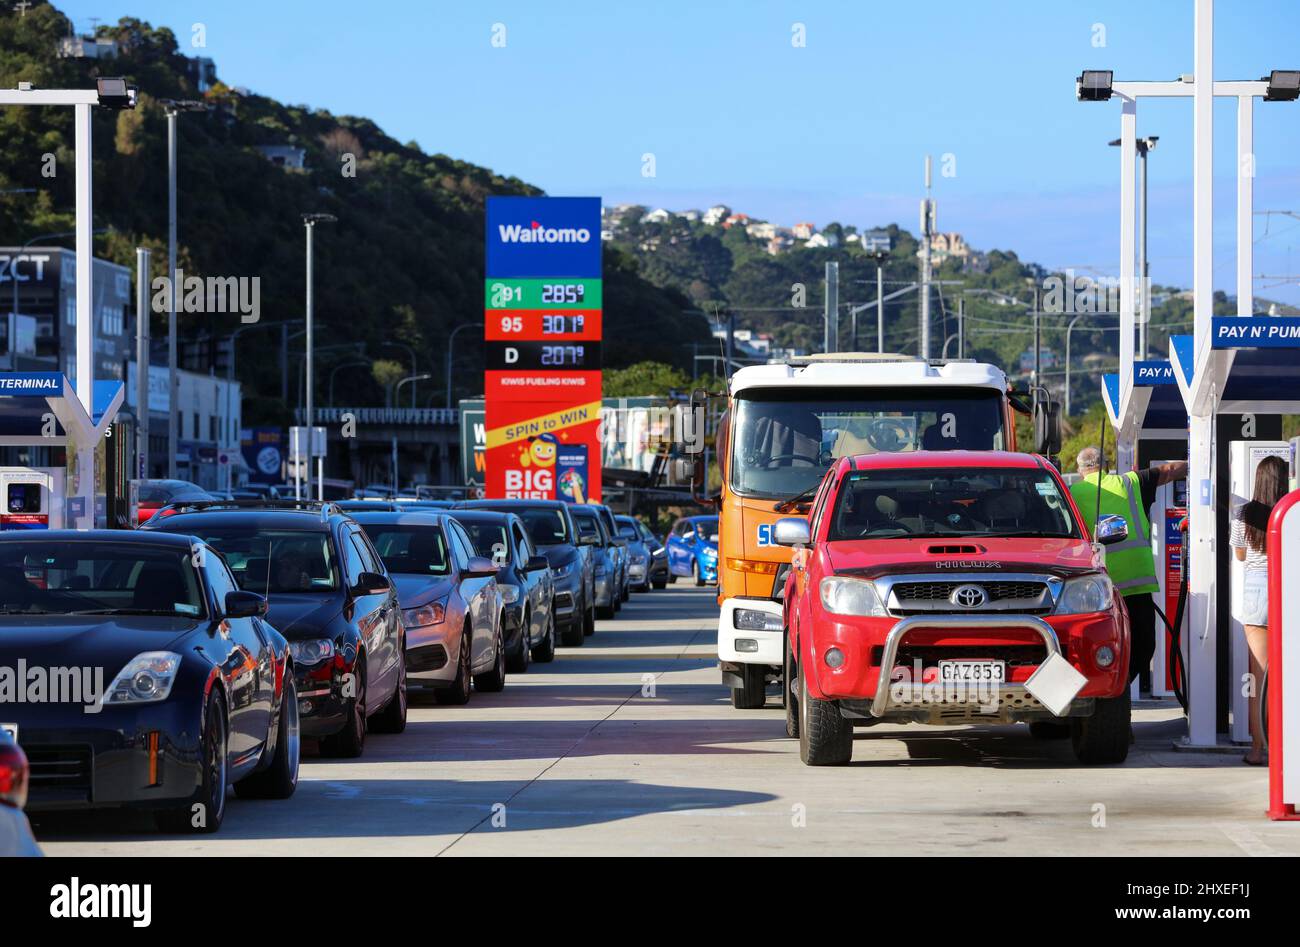 (220312) -- WELLINGTON, 12. März 2022 (Xinhua) -- am Nachmittag des 11. März 2022, kurz vor einer weiteren Erhöhung des Kraftstoffpreises, stehen die Leute Schlange, um die Tanks an einer Waitomo-Tankstelle in der neuseeländischen Hauptstadt Wellington zu füllen. Autos, Boote und Gallonen-Flaschen, Neuseeländer füllten jeden Tank mit Kraftstoff, bevor am Wochenende eine weitere große Preiserhöhung einging. Die Benzinpreise sind im vergangenen Monat bereits dramatisch gestiegen, wobei der nationale Durchschnittspreis von 91 Benzin um 11,8 Prozent auf 2,94 neuseeländische Dollar pro Liter und der Dieselpreis um 23,1 Prozent auf 2,28 neuseeländische dol Anstieg Stockfoto